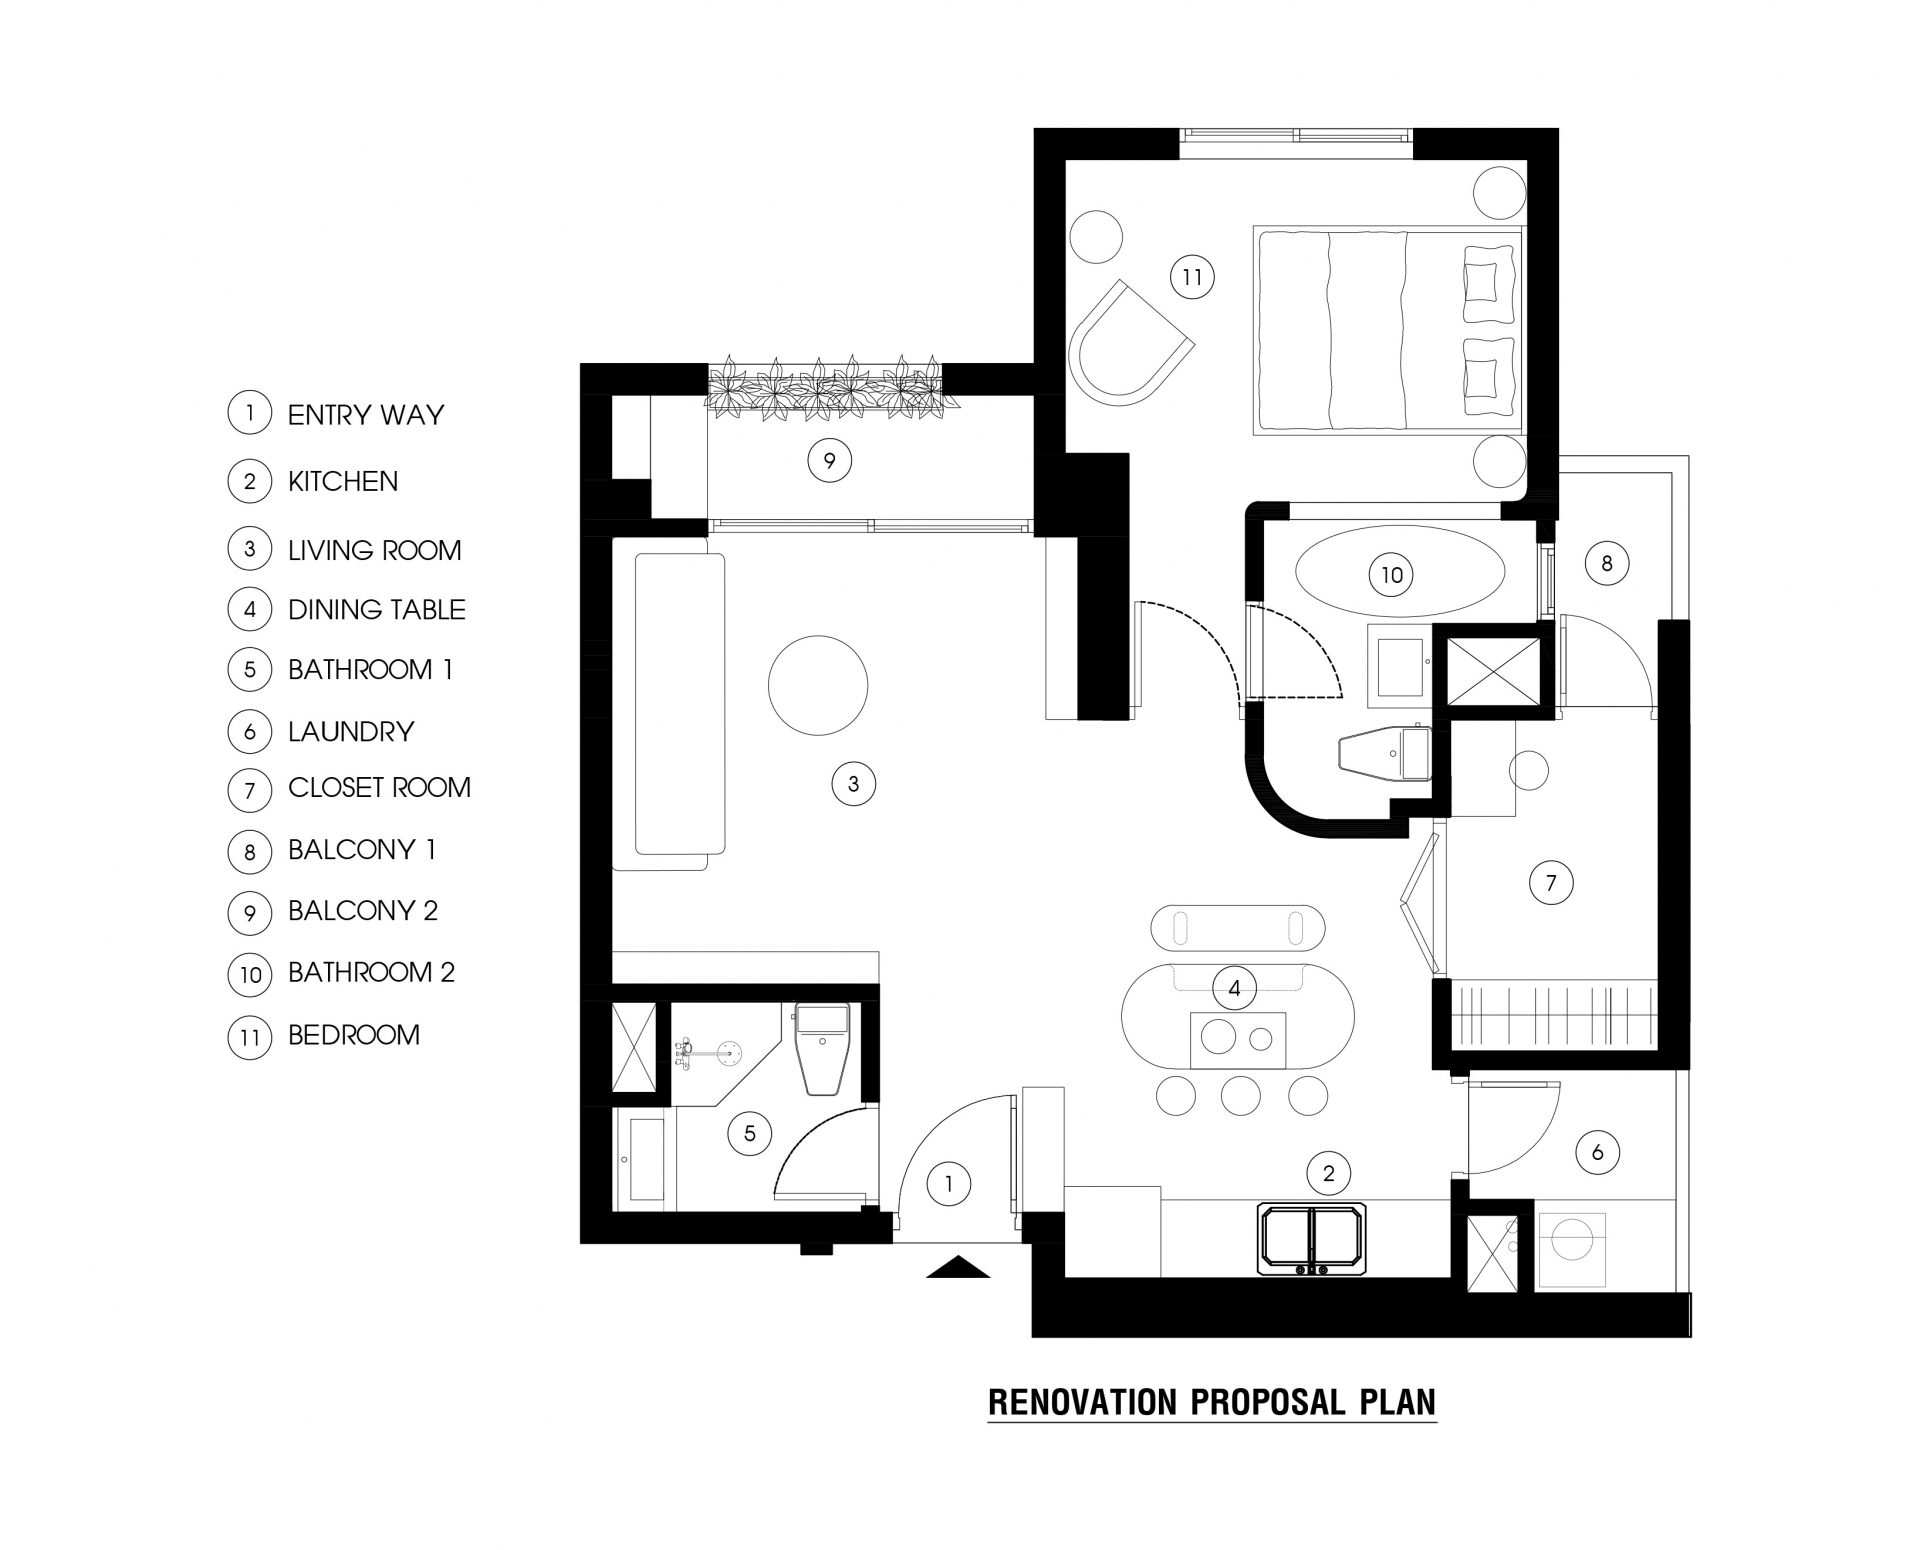 Sơ đồ thiết kế nội thất căn hộ “Brown Box” do LimDim House Studio cung cấp.